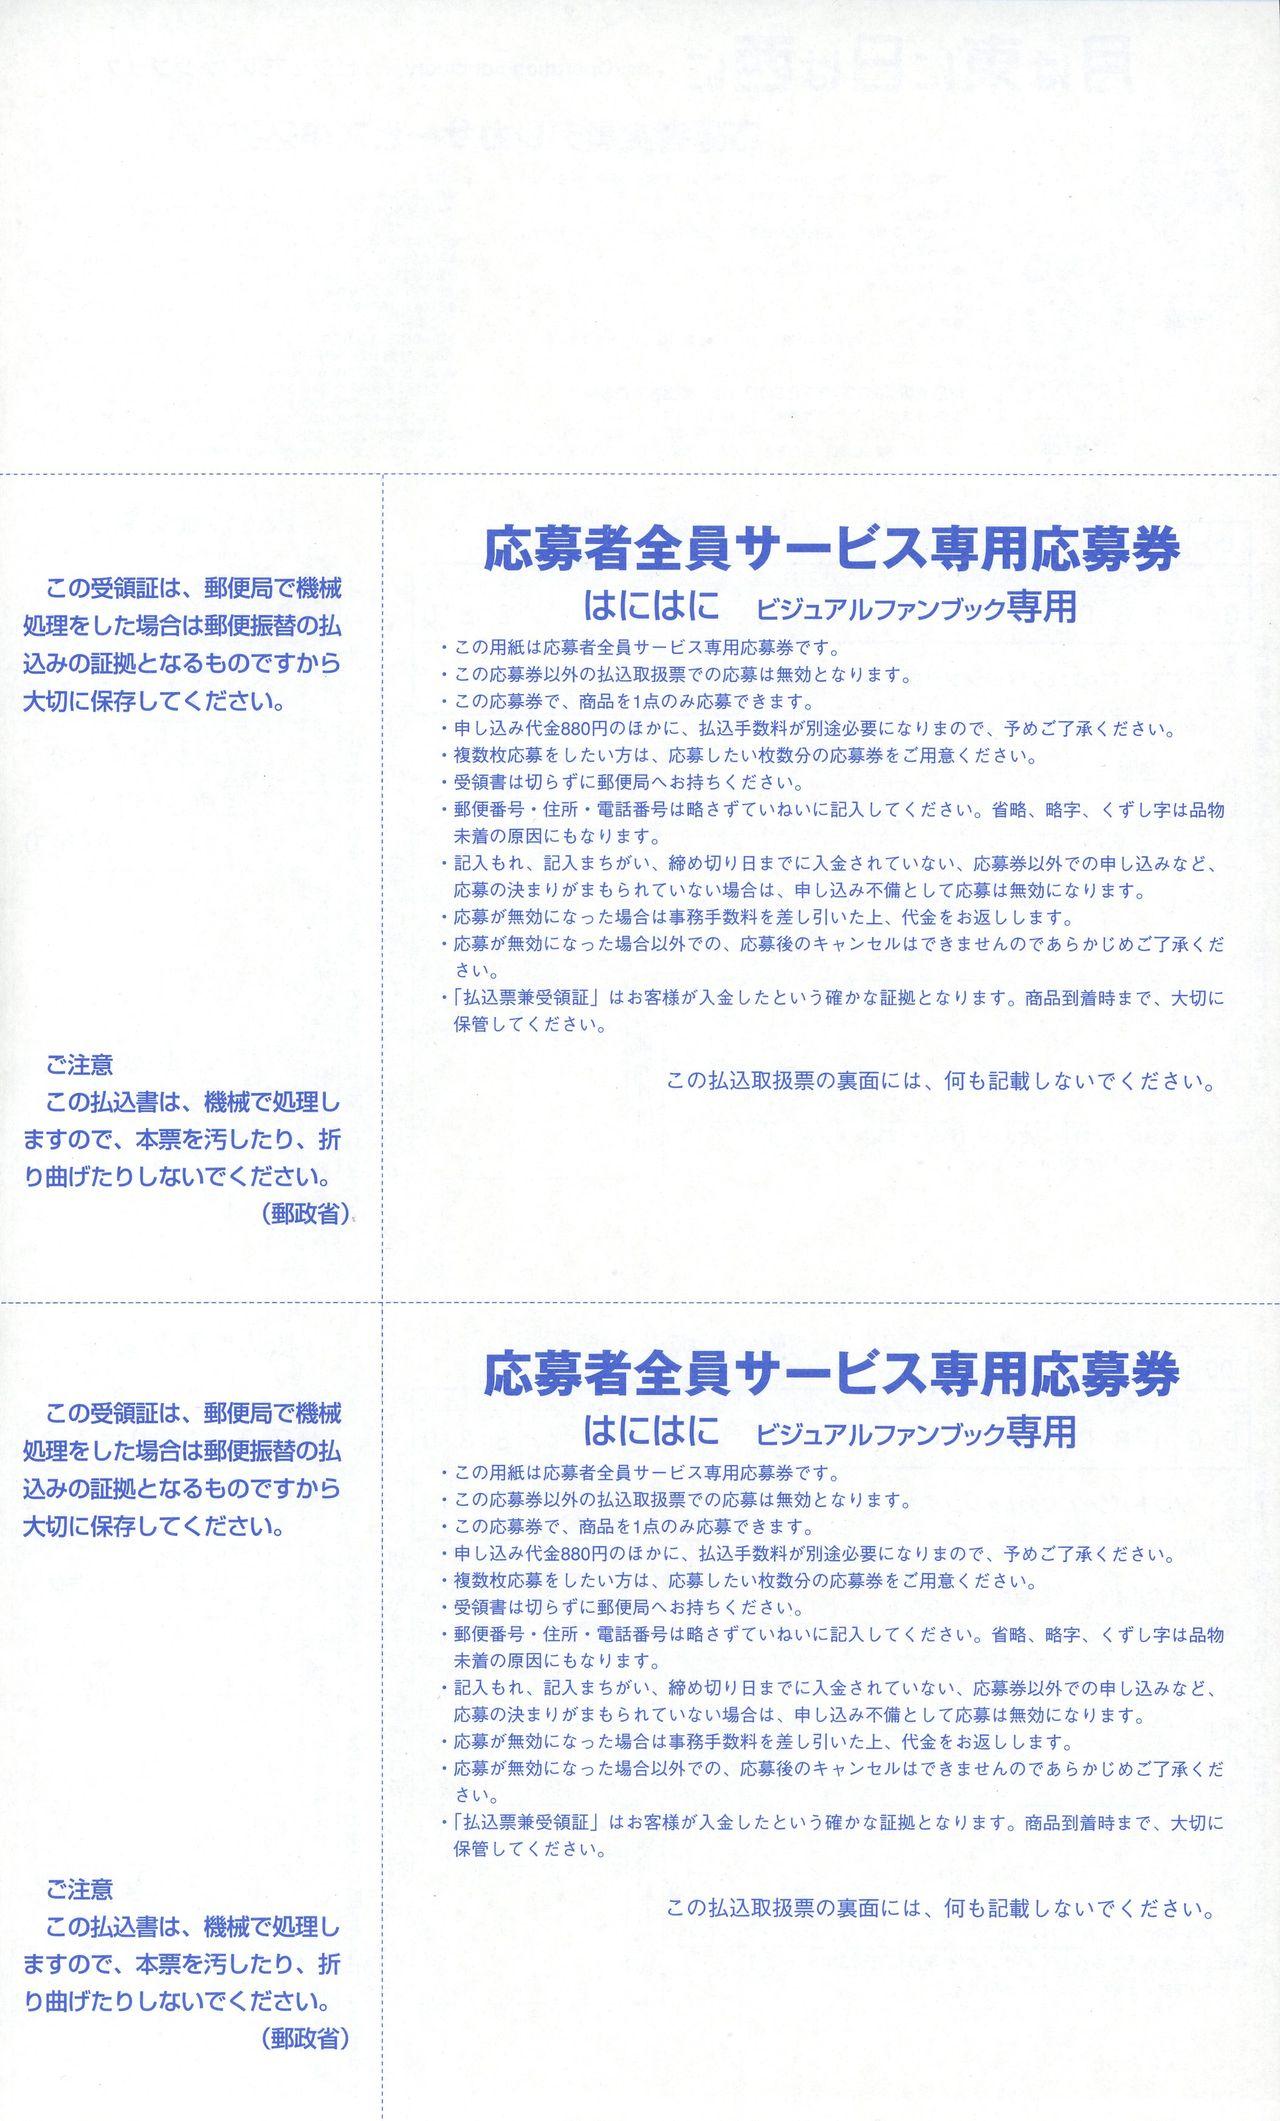 Tsuki wa Higashi ni Hi wa Nishi ni - Operation Sanctuary - Visual Fan Book Shokai Ban 250